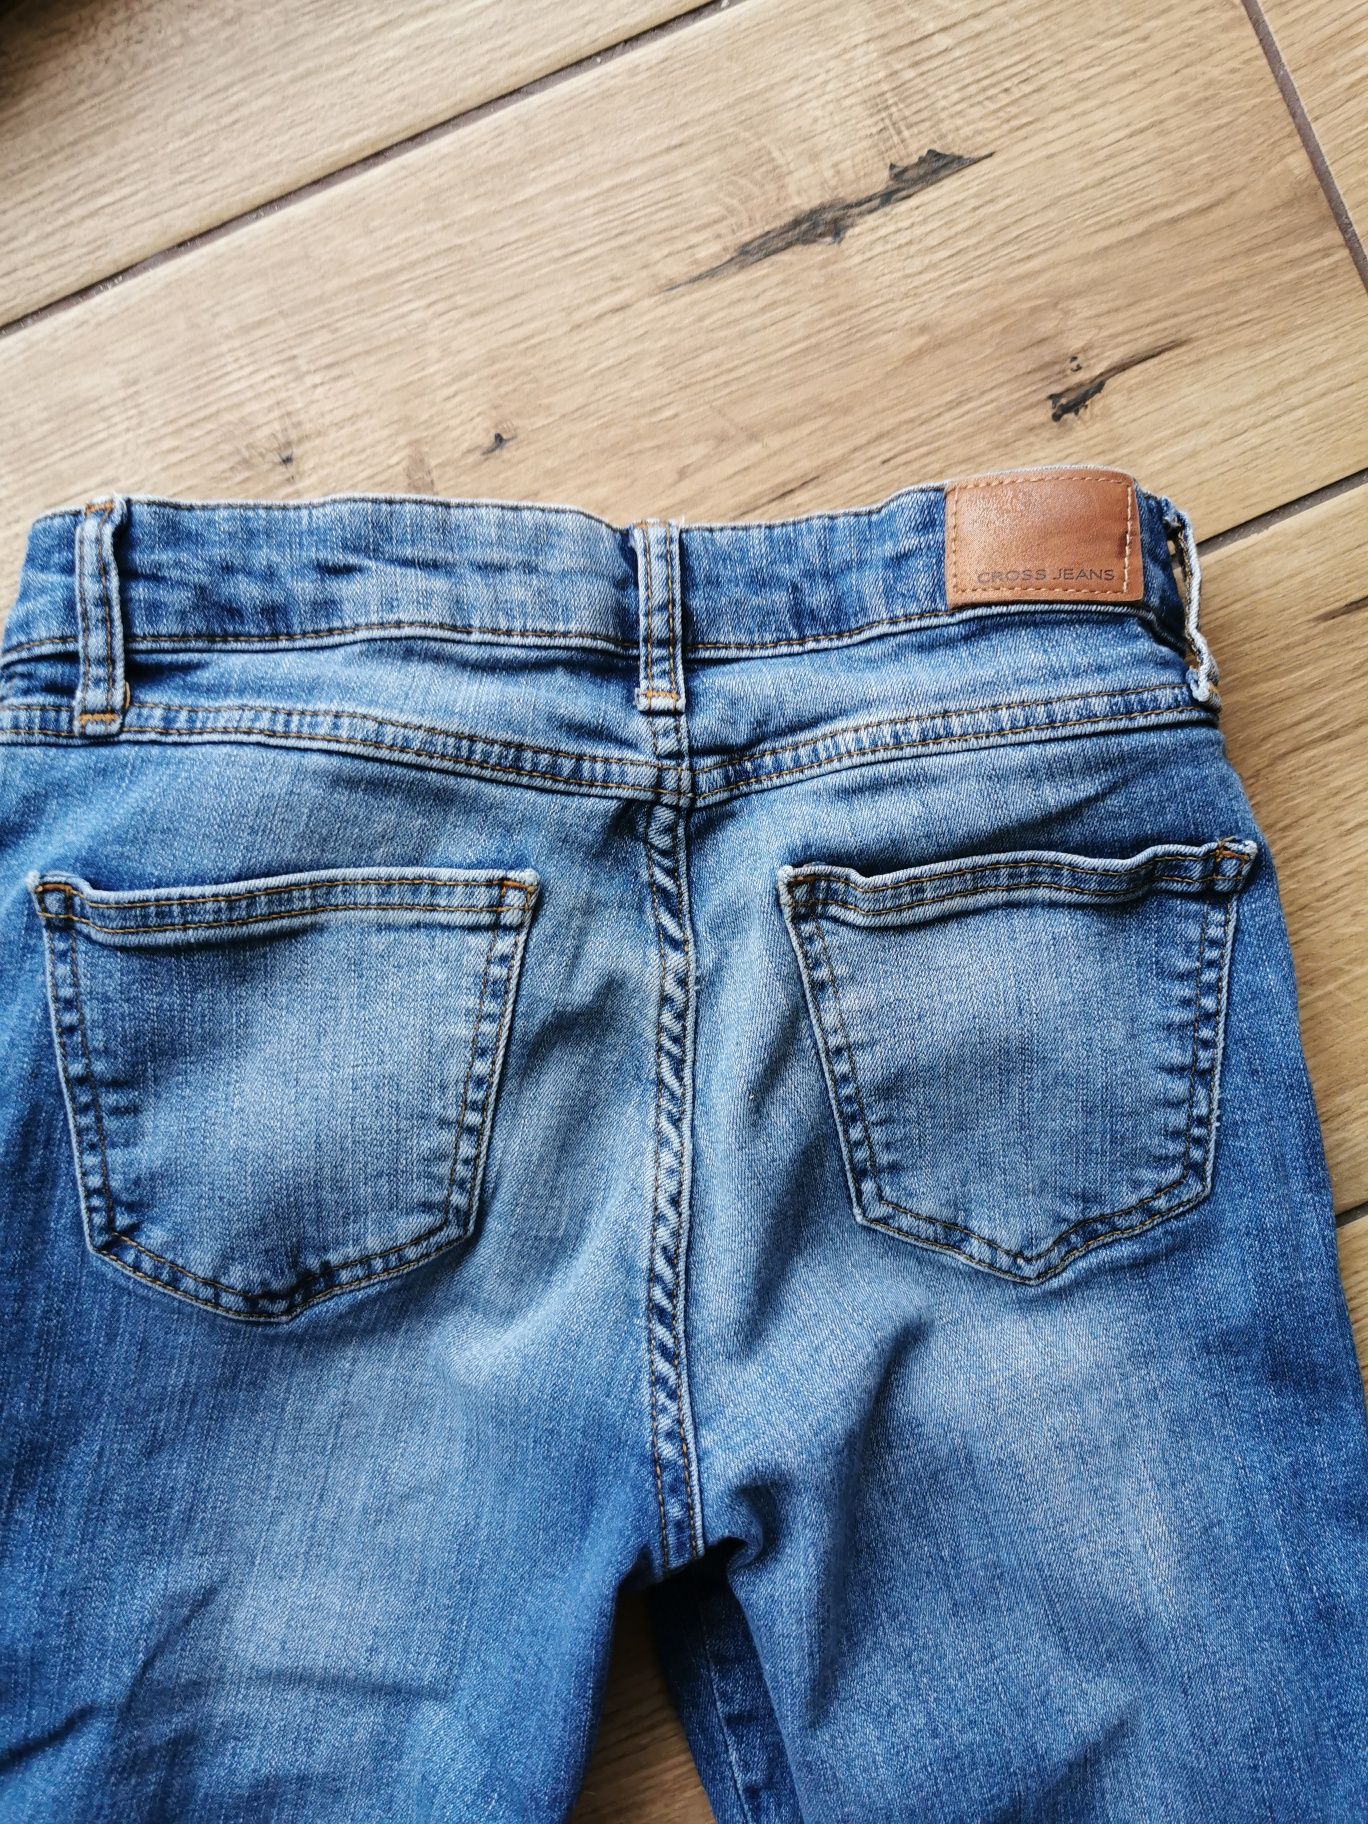 Spodnie Cross Jeans jeansy 27 34 niebieskie granatowe wycierane S M